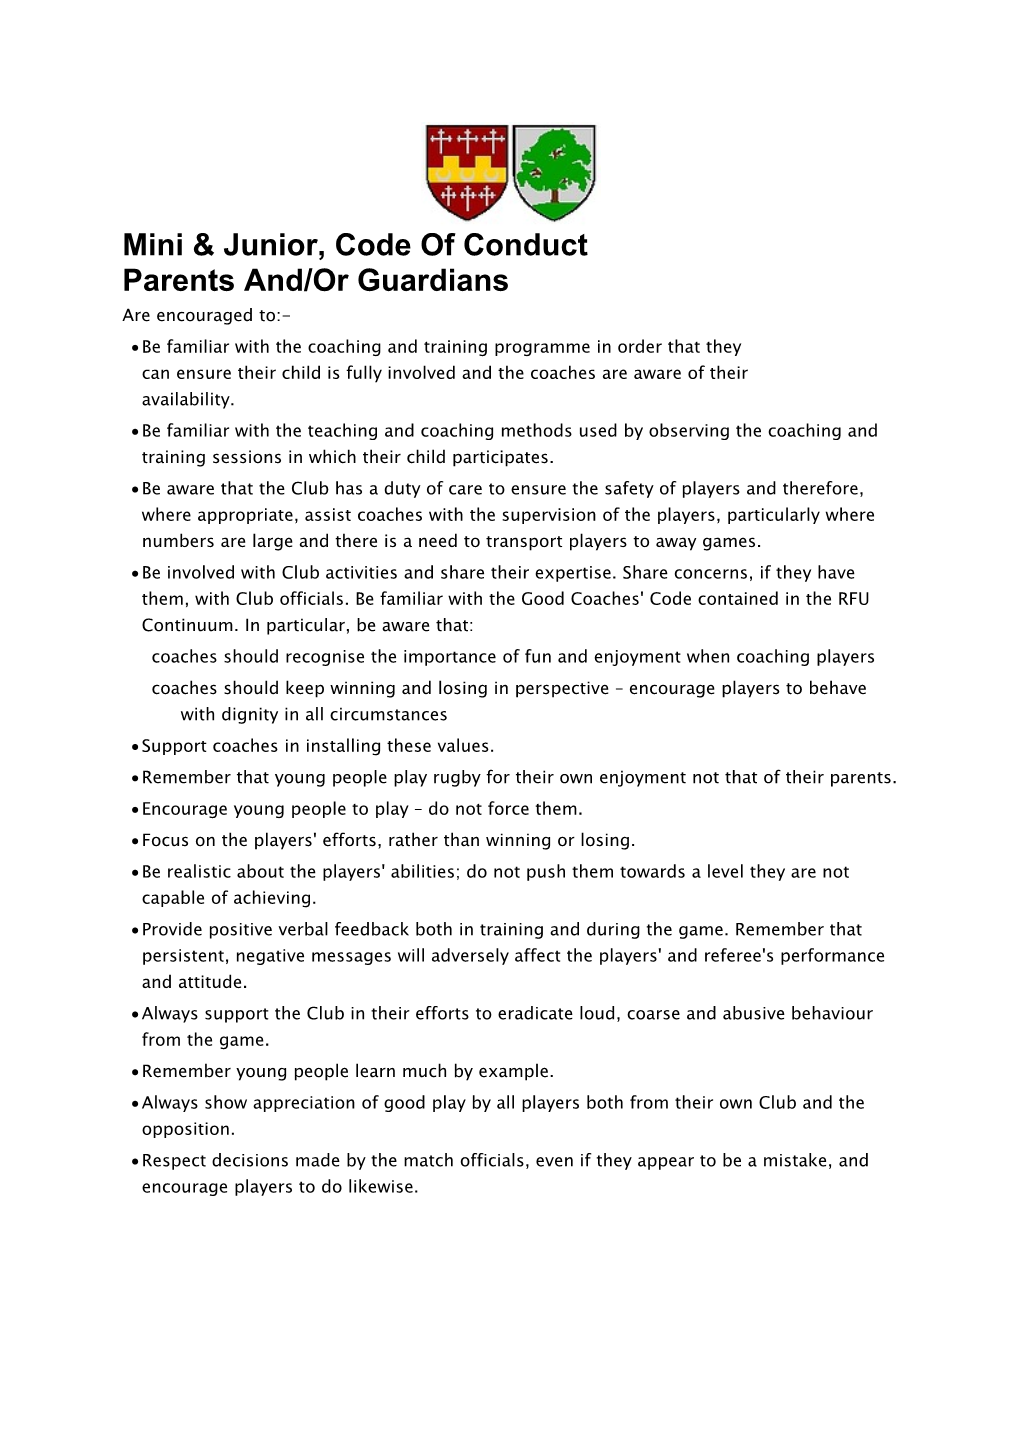 Mini & Junior, Code of Conduct